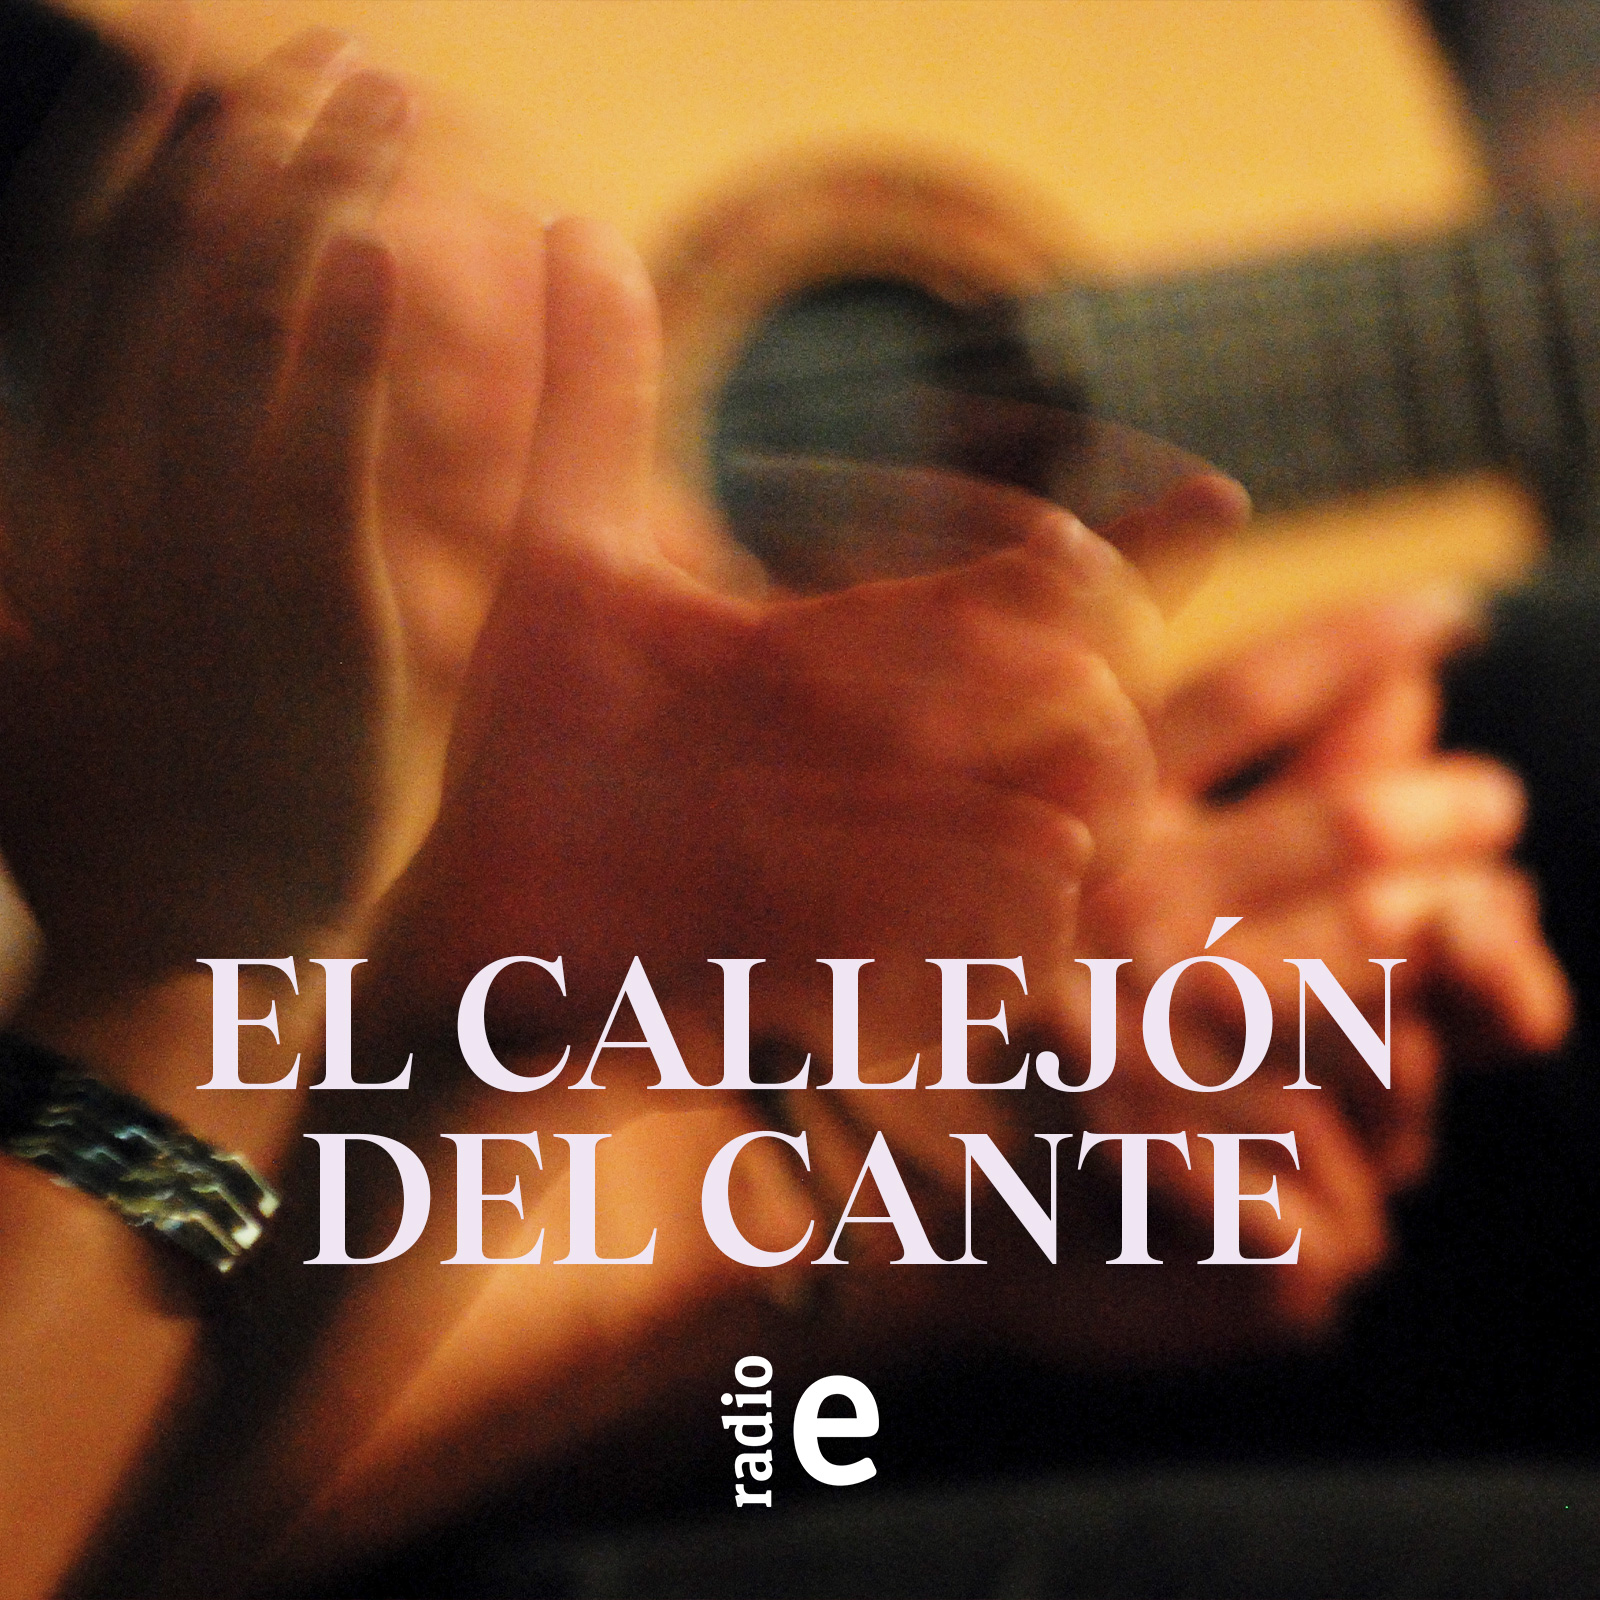 El callejón del cante - Premios Flamenco Hoy - 24/05/14